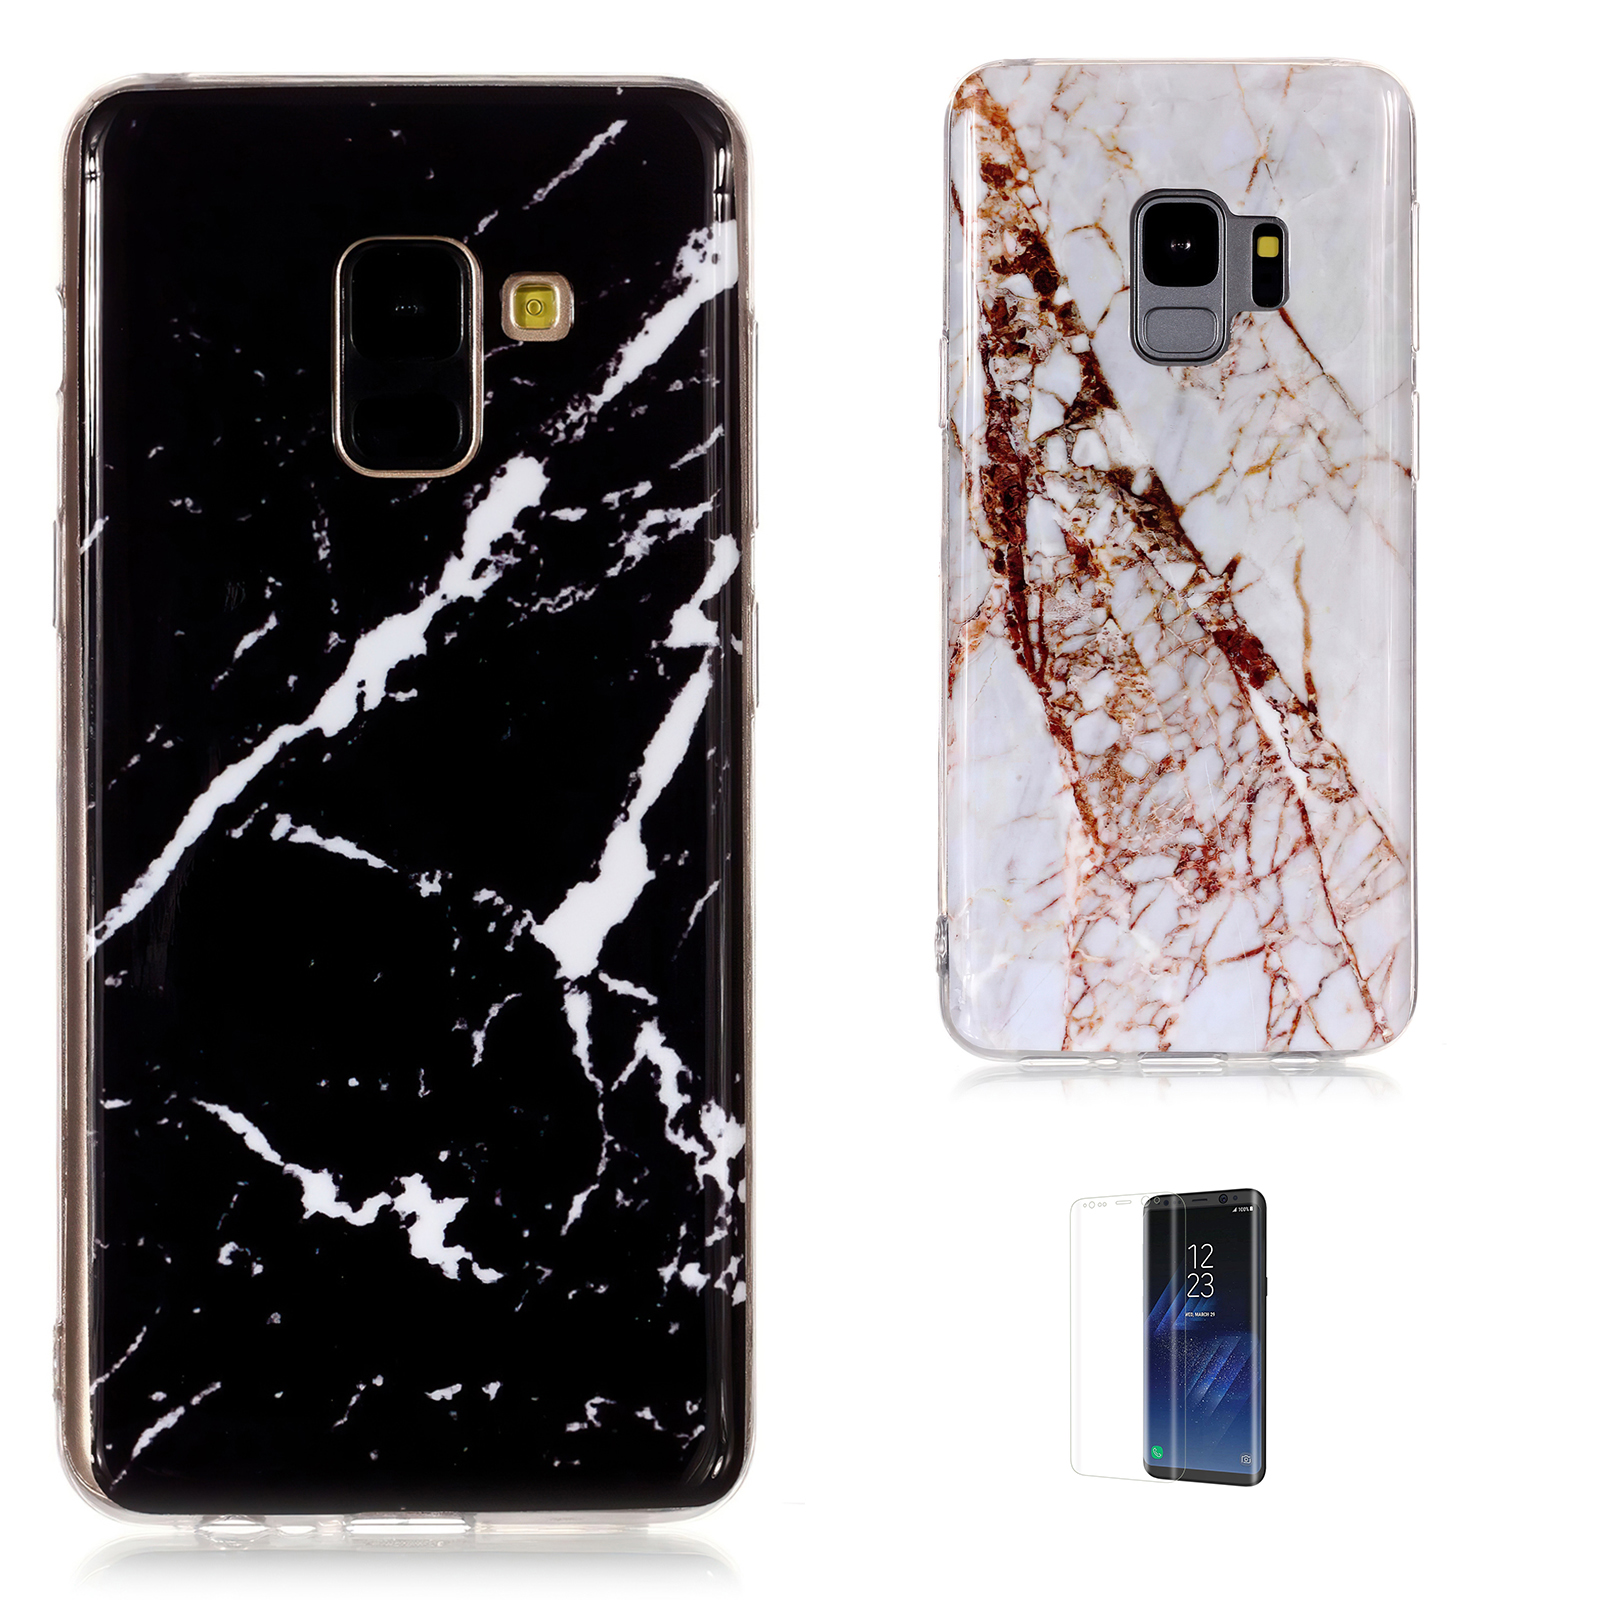 Samsung Galaxy S9 - Skal / Skydd / Marmor